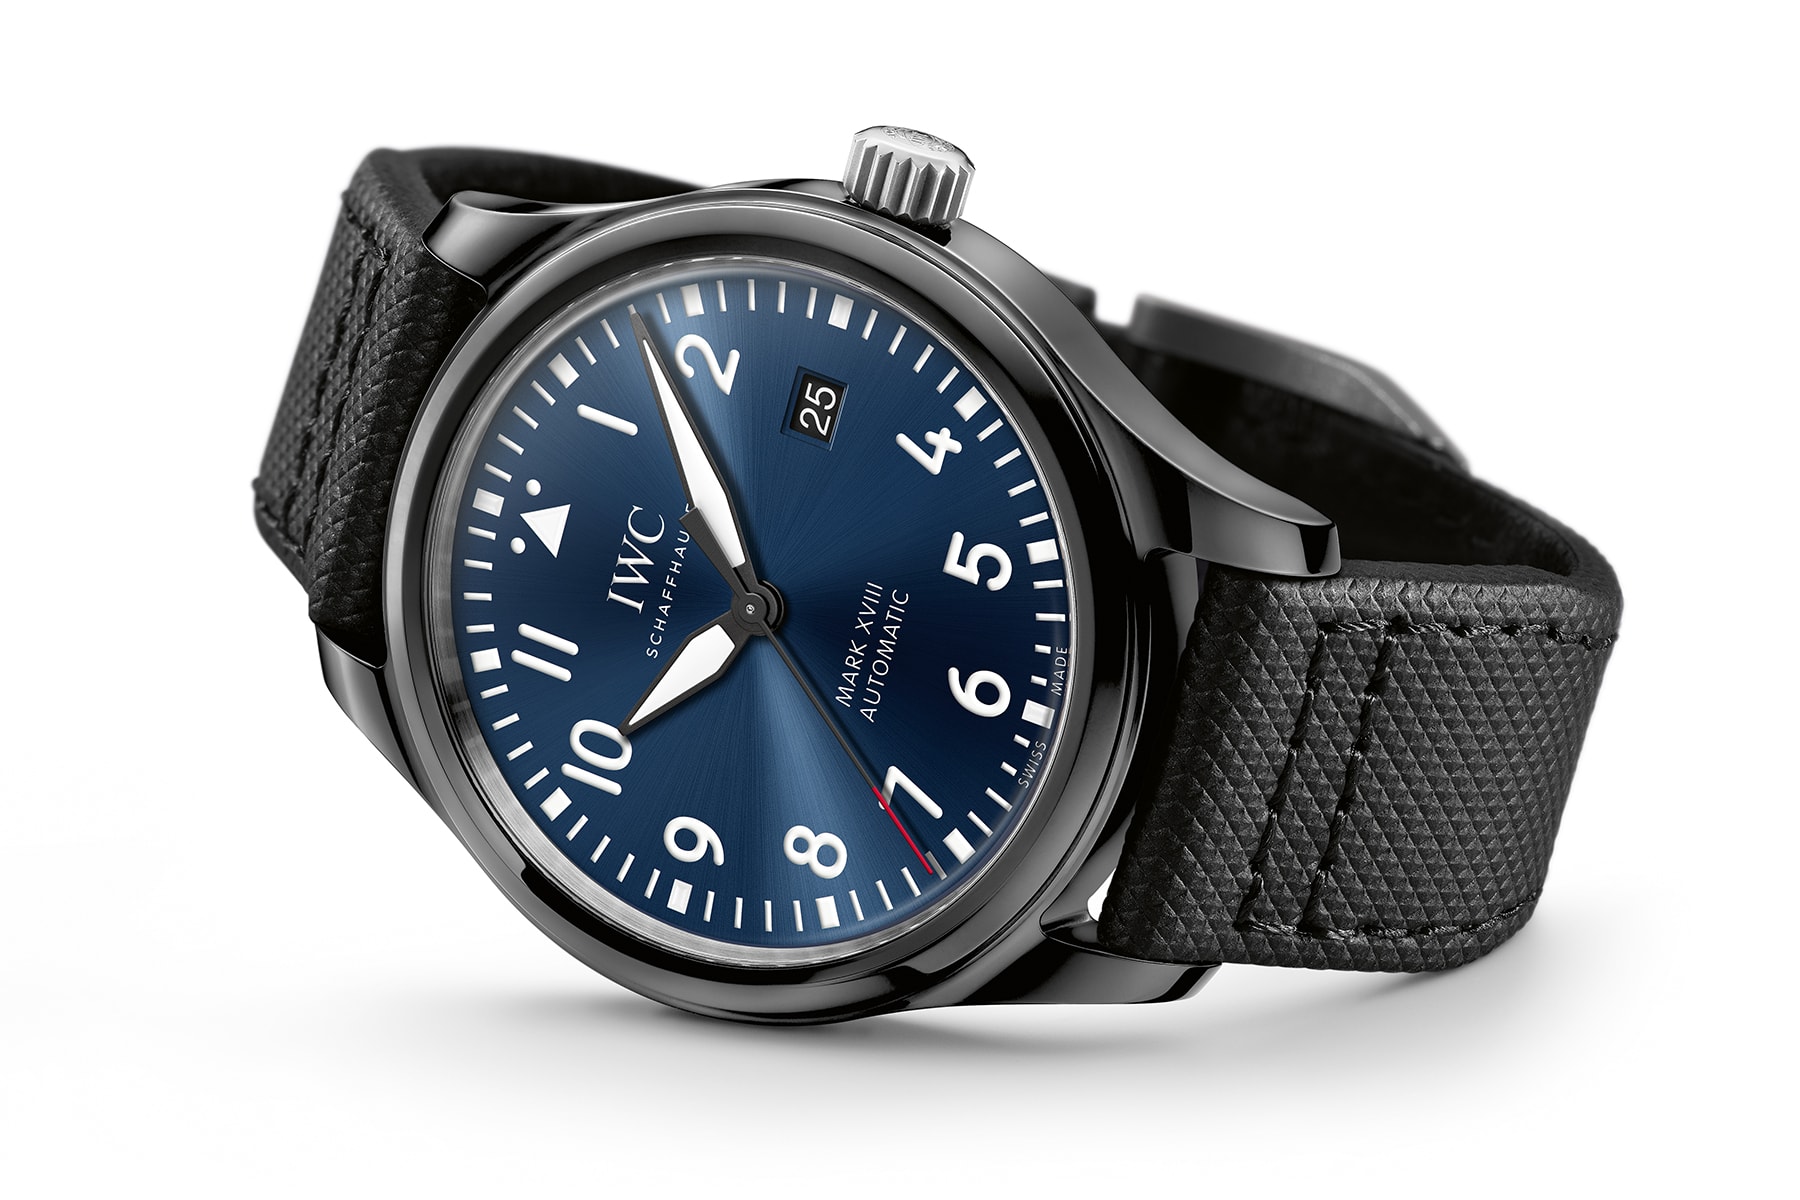 IWC 經典軍錶款式 Mark XVIII 推出全新藍黑限量版